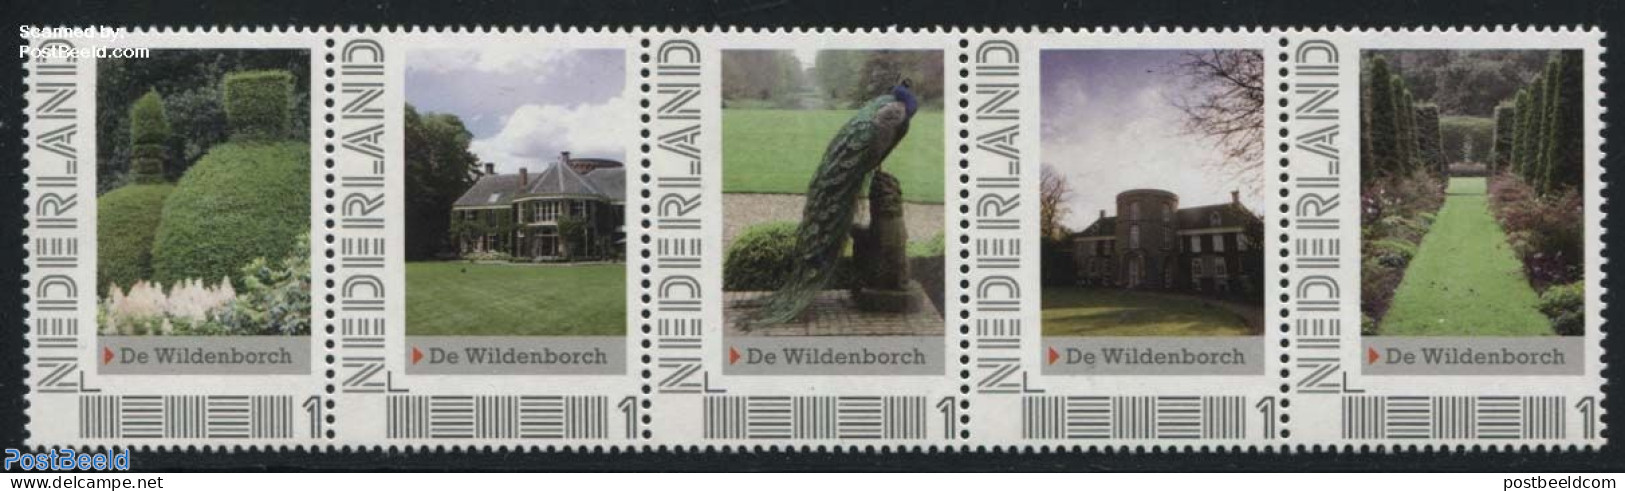 Netherlands - Personal Stamps TNT/PNL 2012 De Wildenborch 5v [::::], Mint NH, Nature - Birds - Gardens - Castles & For.. - Schlösser U. Burgen